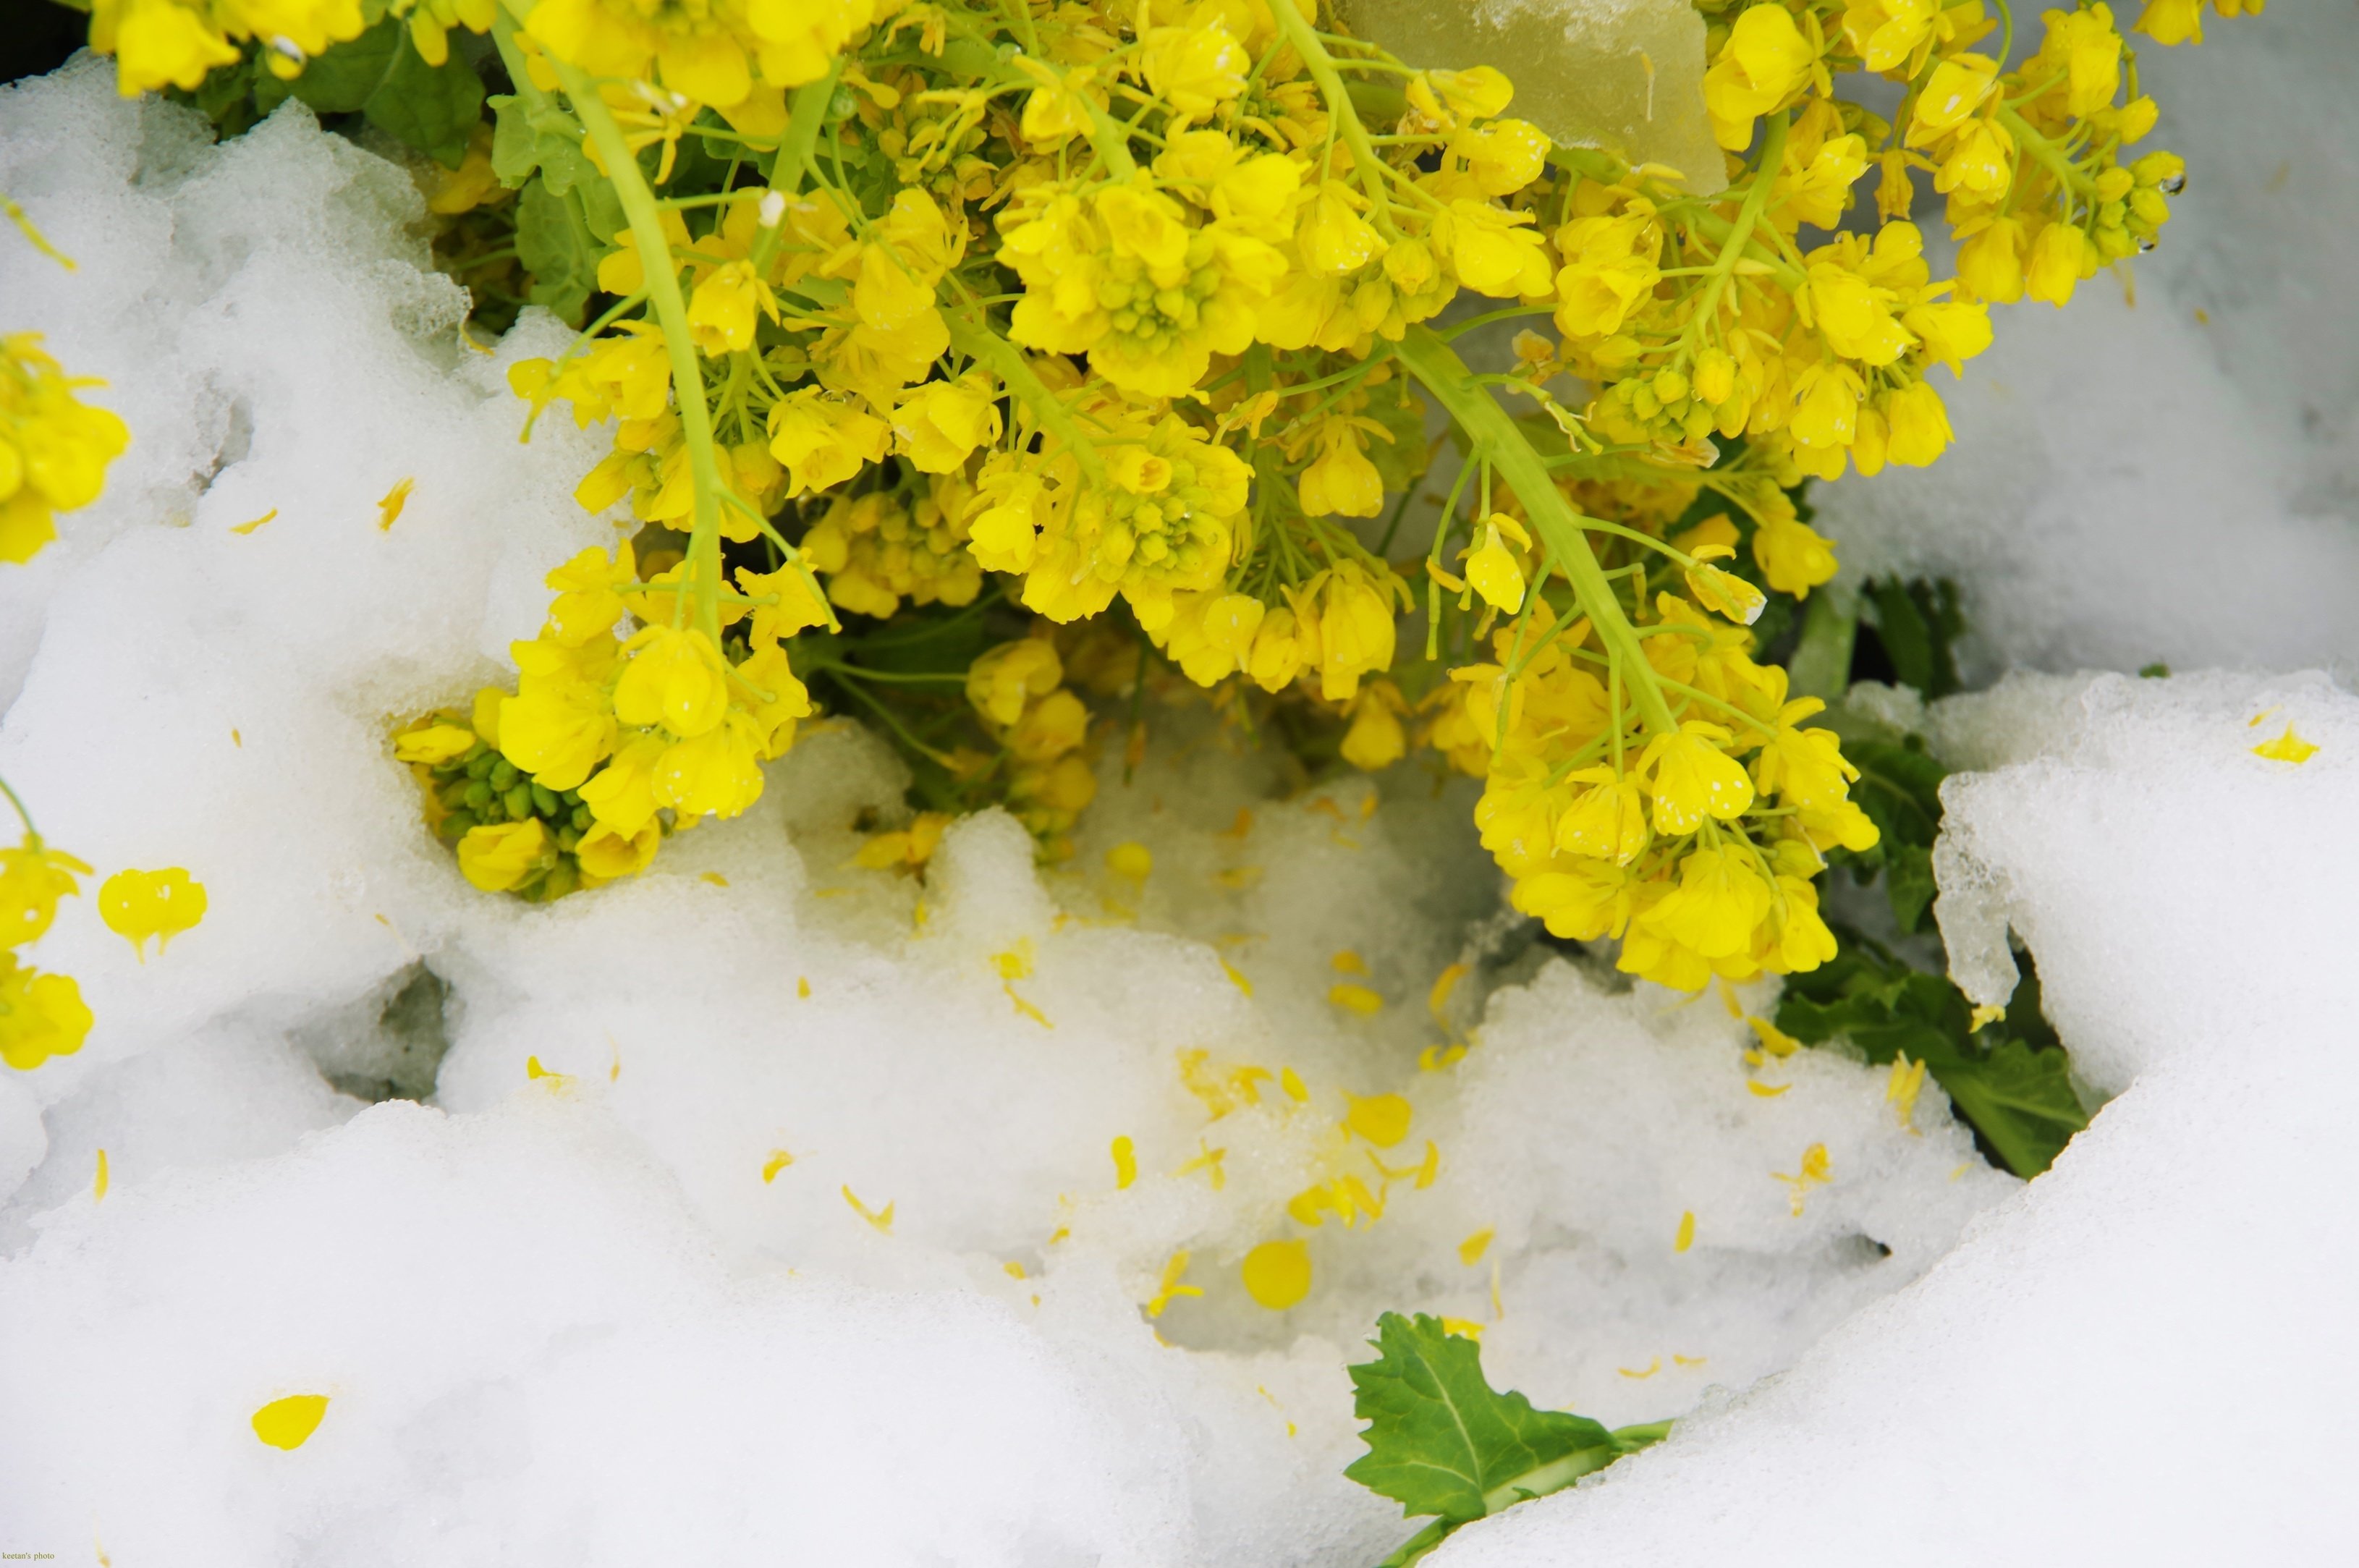 雪の菜の花畑 写真素材 [ 4829833 ] - フォトライブラリー photolibrary